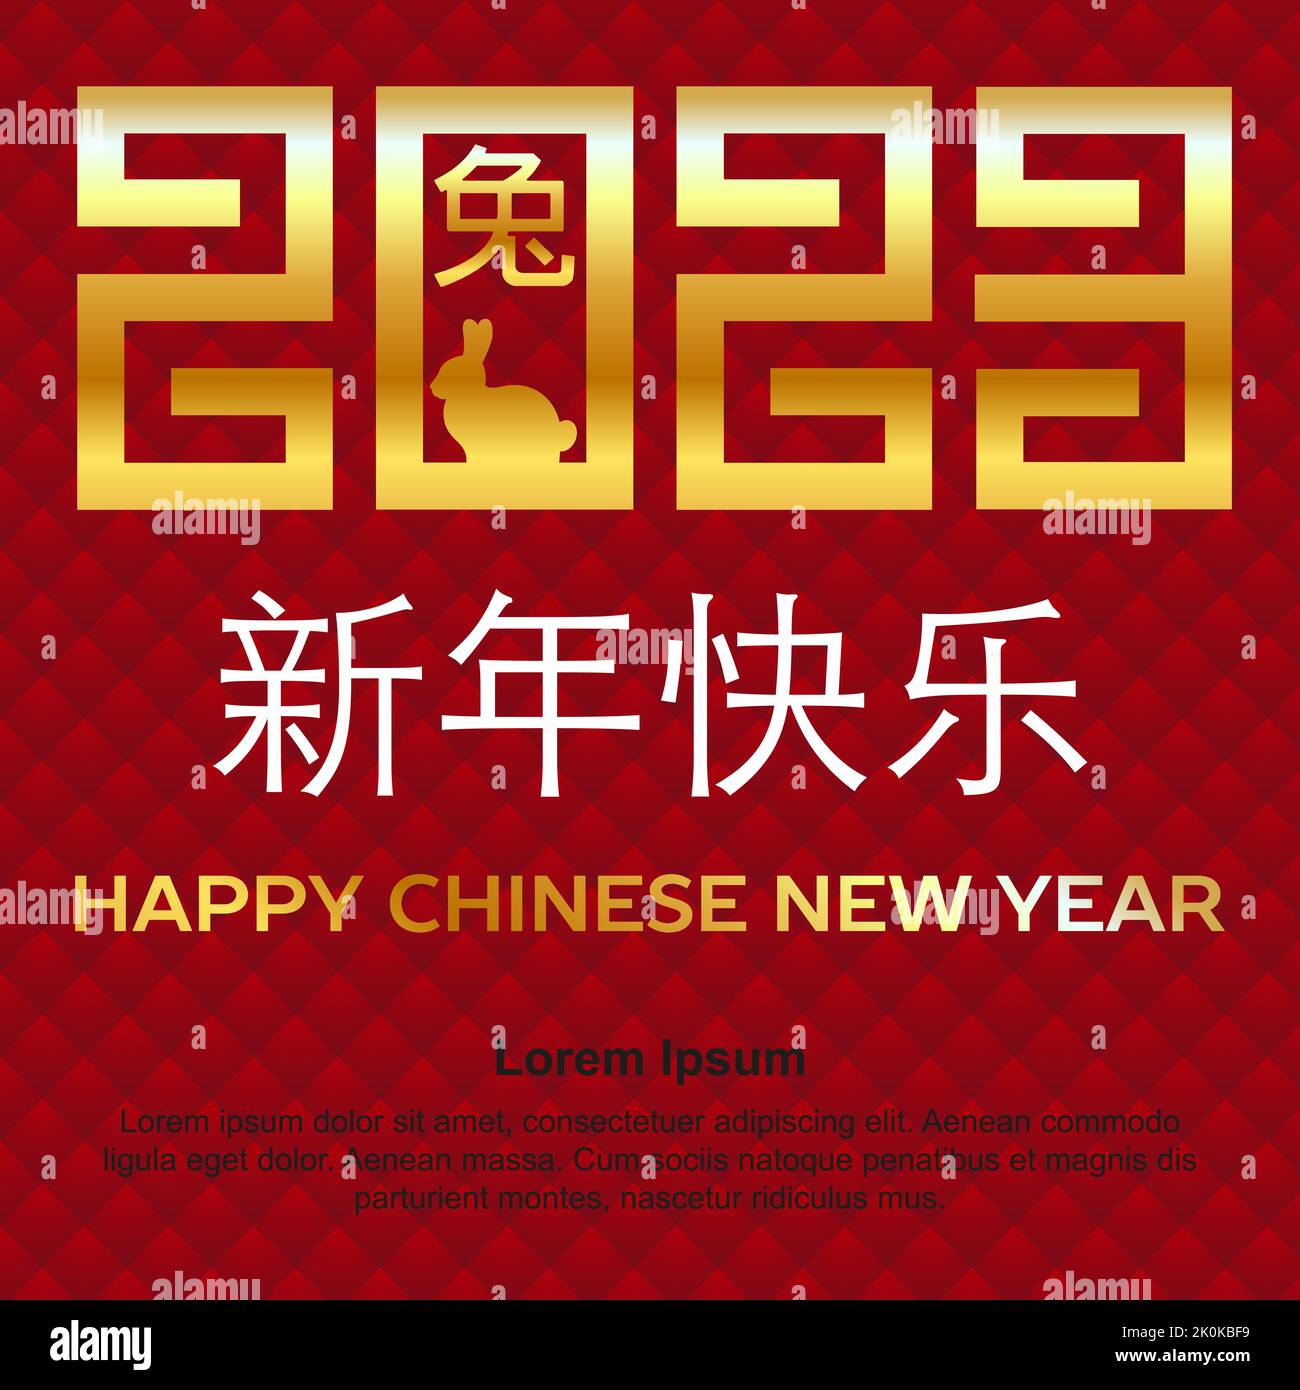 Bannière carrée Happy Chinese New Year 2023, style asiatique. Inscription chinoise qui se traduit par lapin et bonne année chinoise Illustration de Vecteur